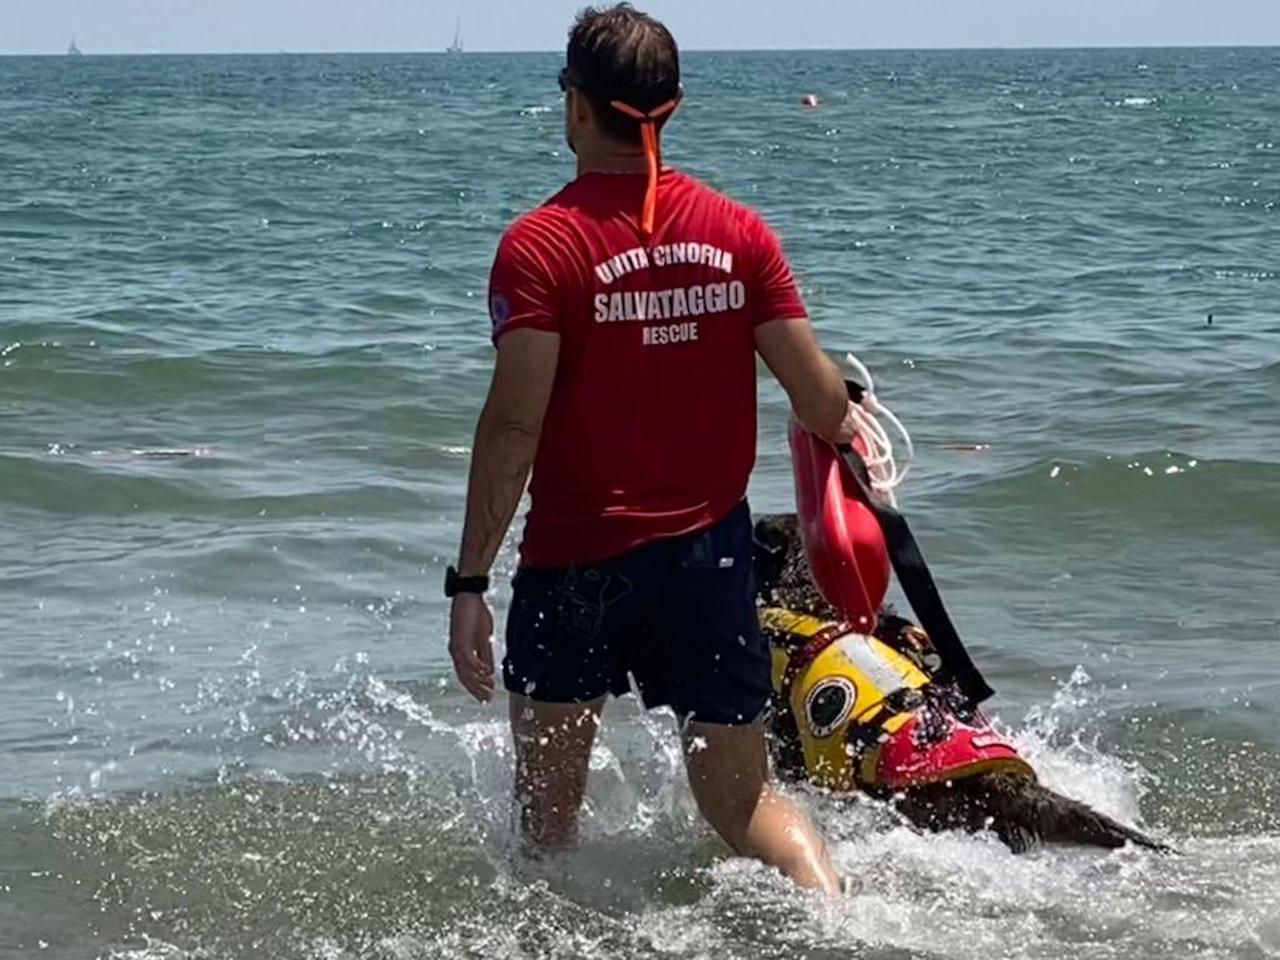 Cani salvataggio in azione alla Spiaggia Libera N. 3 della Playa di Catania